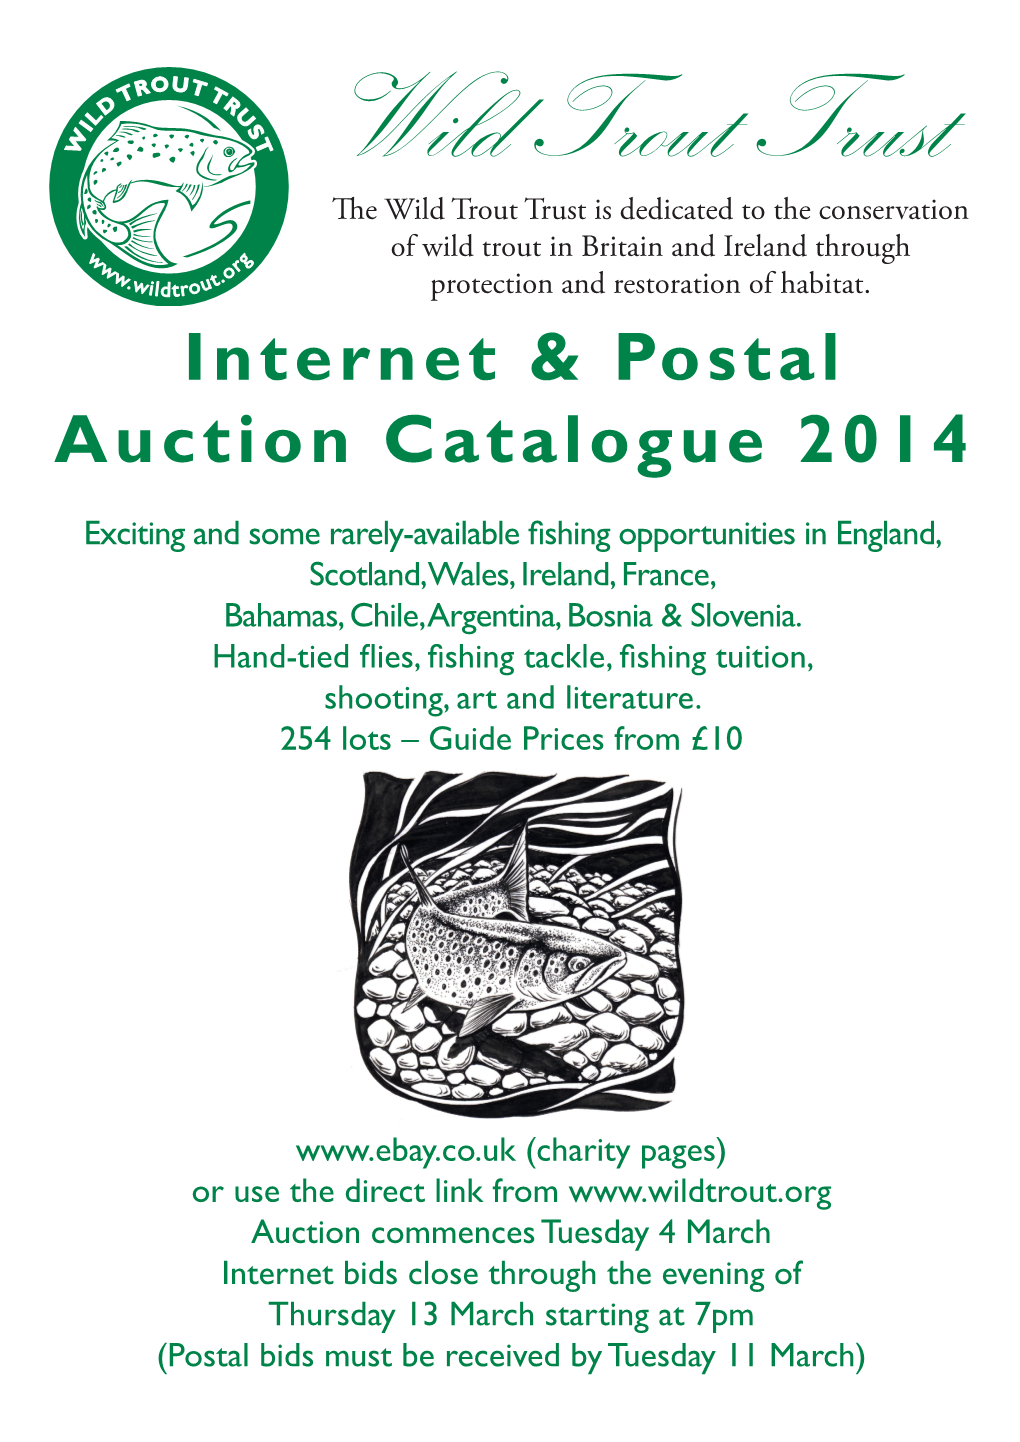 Internet & Postal Auction Catalogue 2014